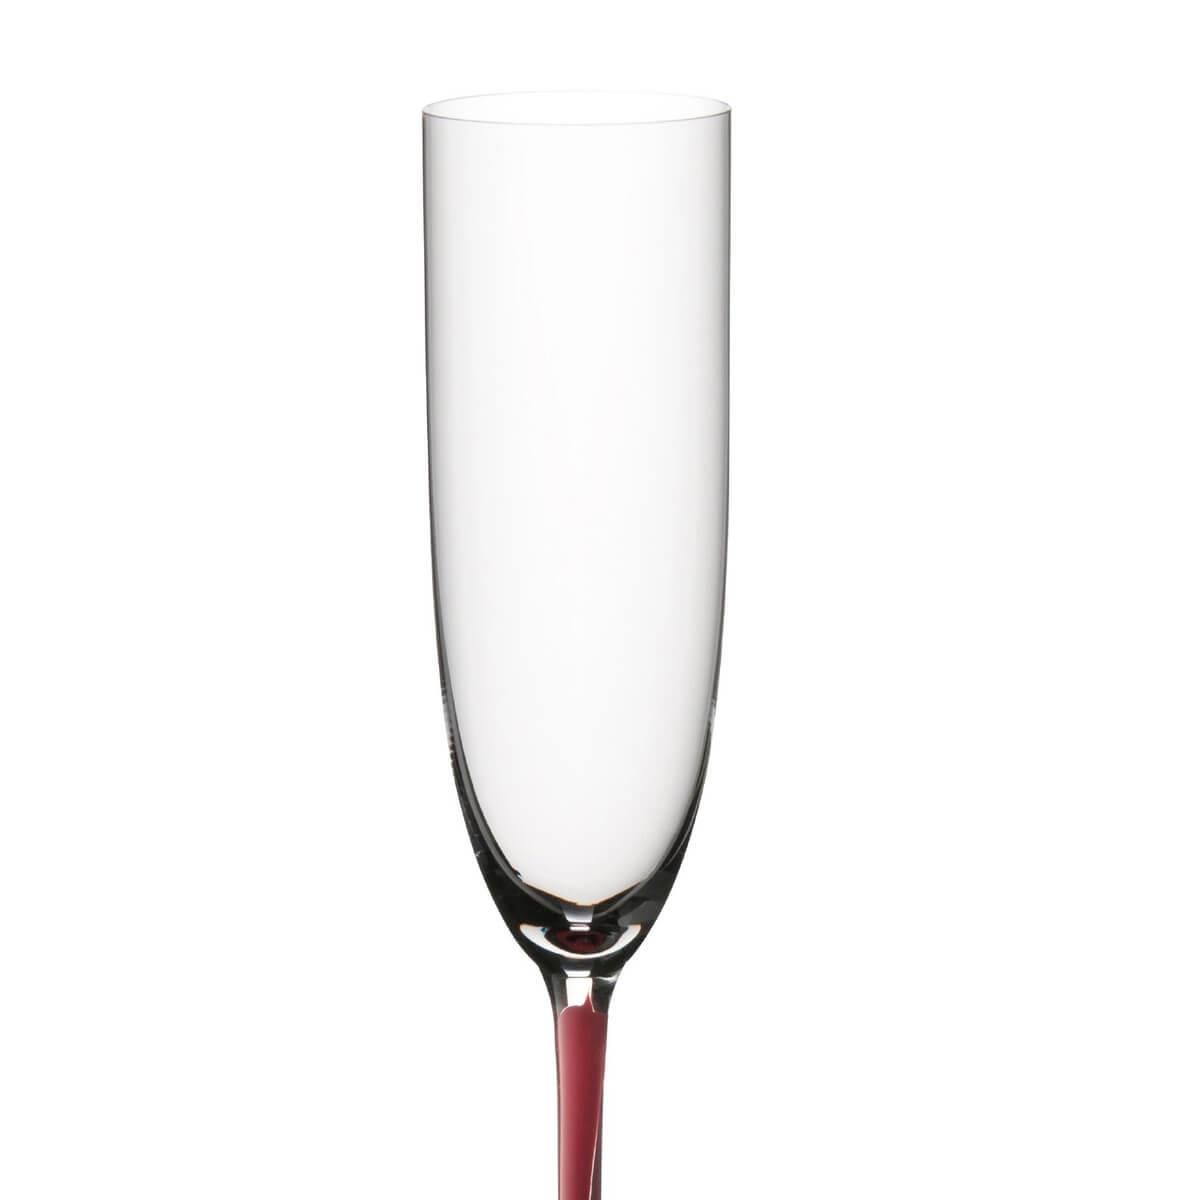 330cc【奧地利 Riedel 紅梗】Sommeliers R Sparkling/Champagne刻字香檳杯 - MSA玻璃雕刻